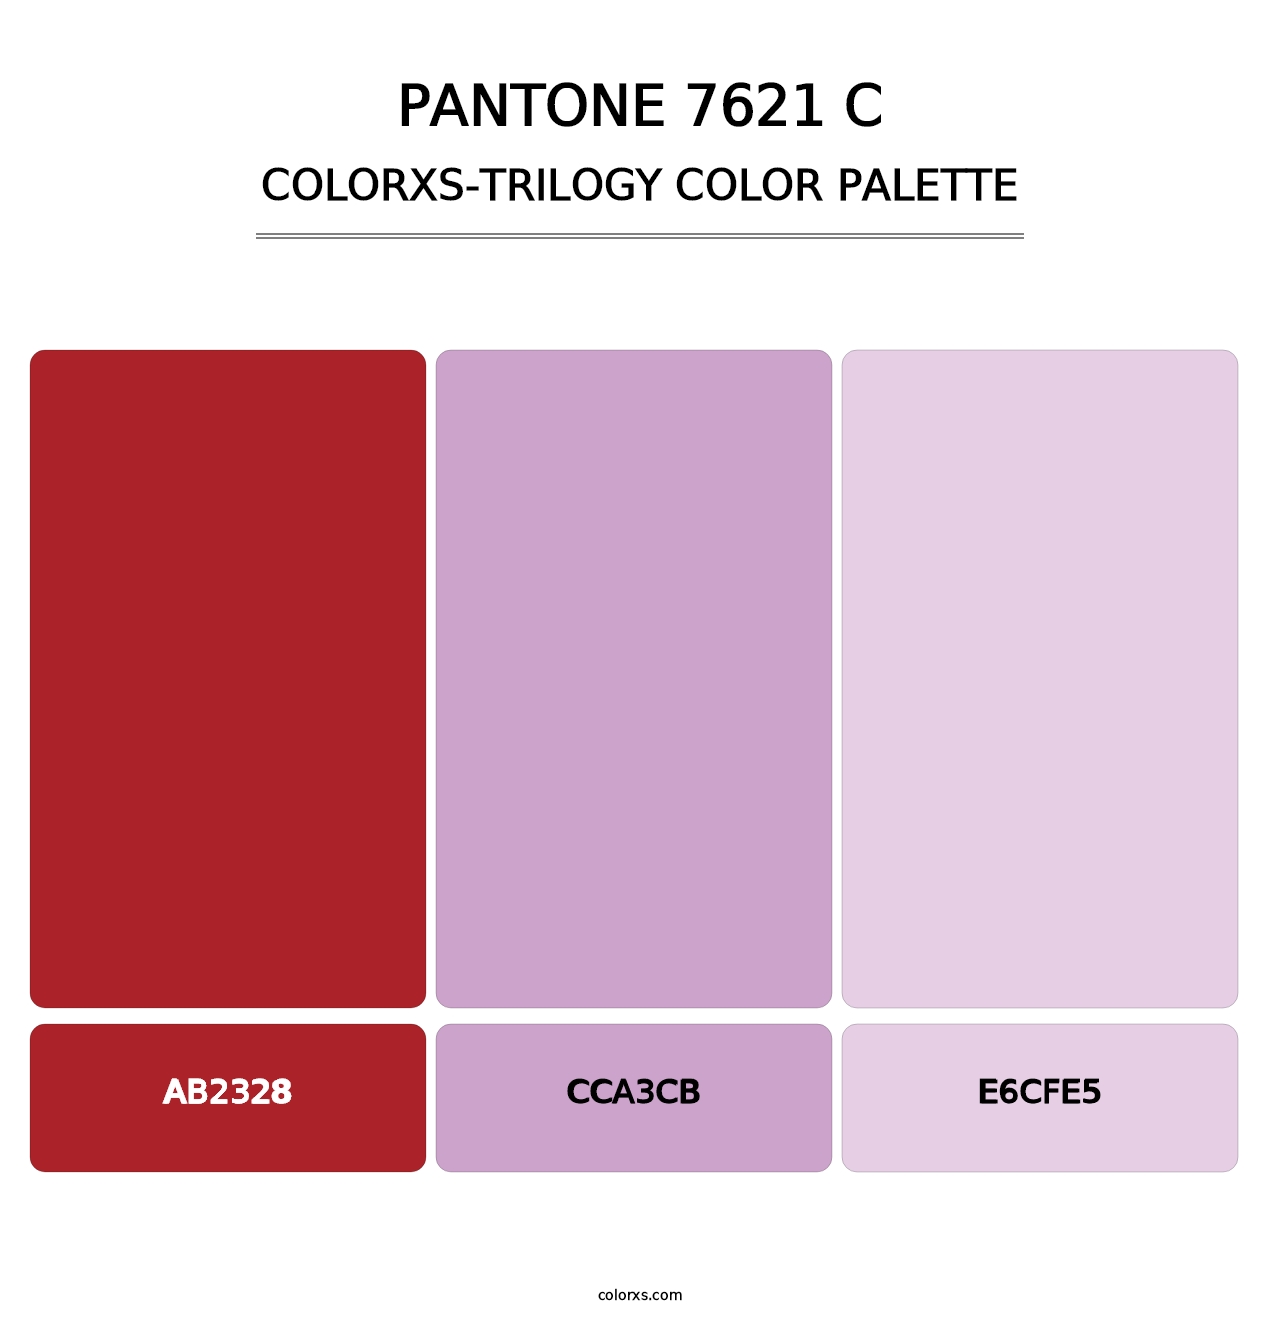 PANTONE 7621 C - Colorxs Trilogy Palette